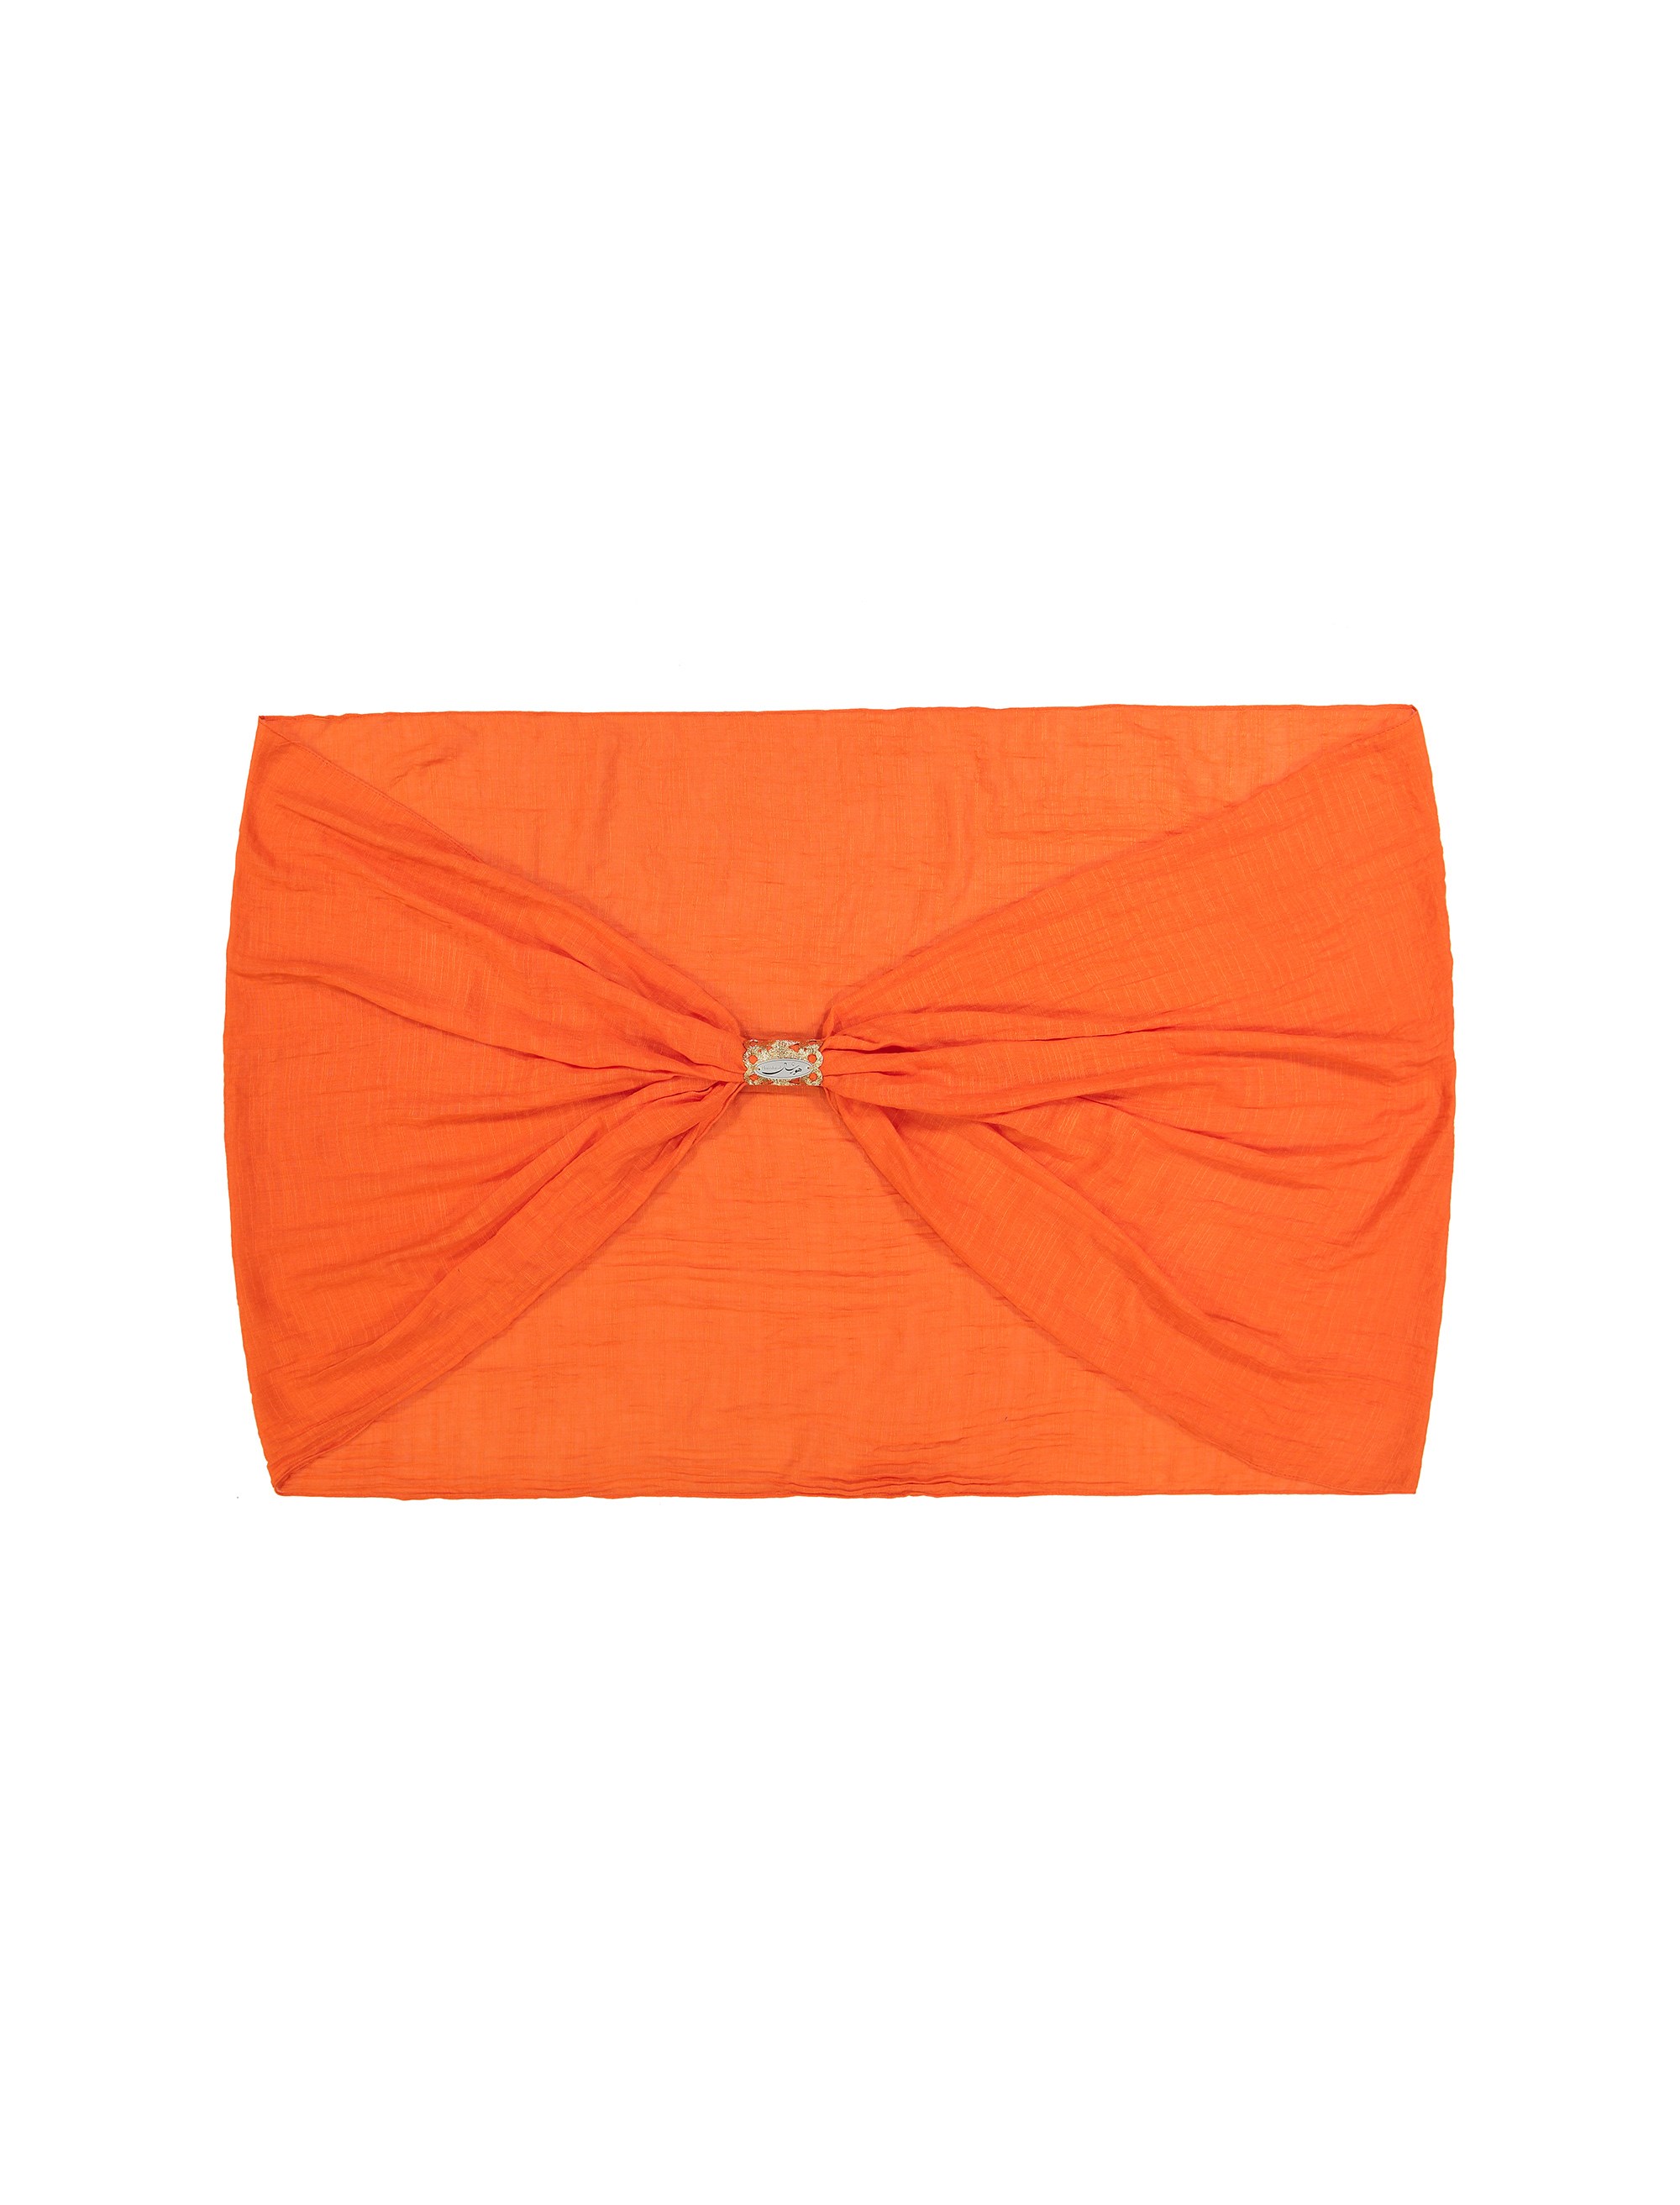 شال نخی ساده زنانه - هورشال تک سایز - نارنجي - 3